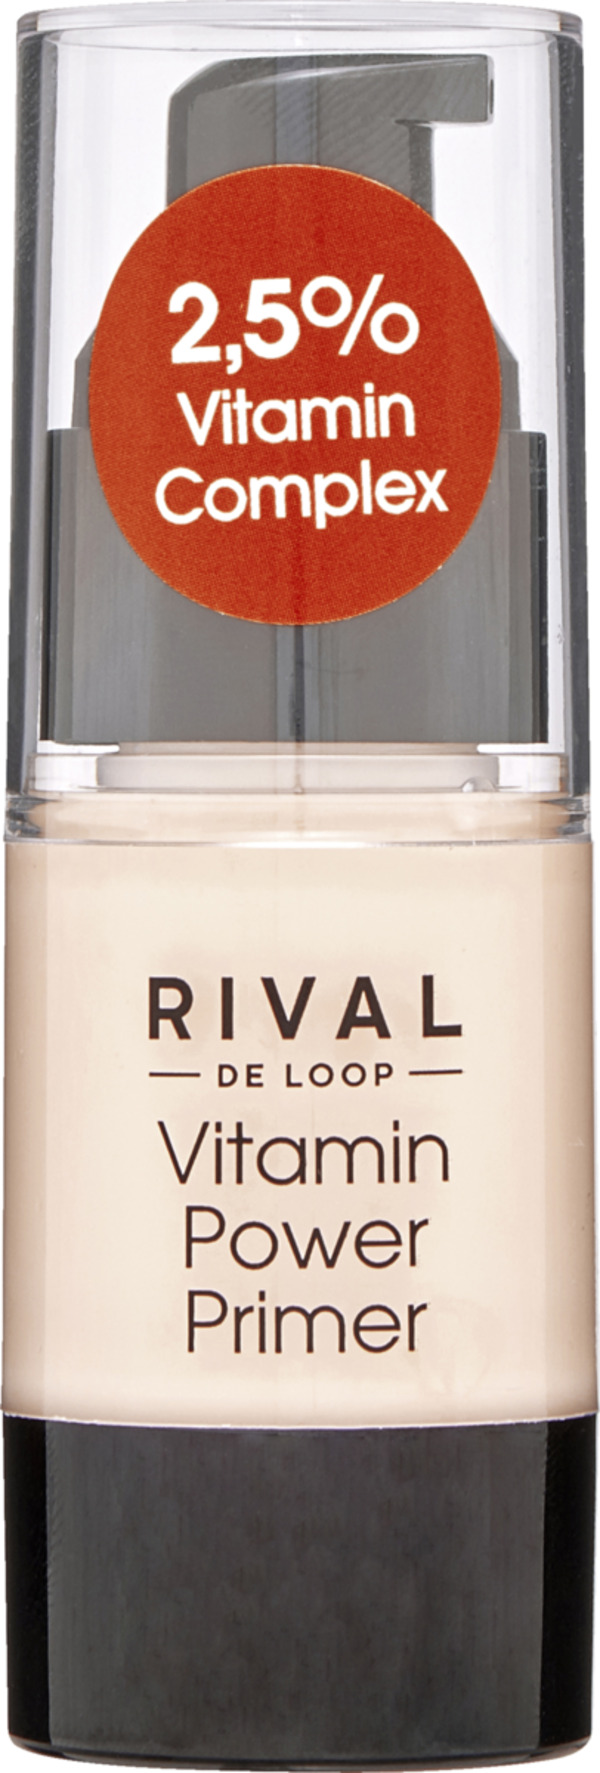 Bild 1 von RIVAL DE LOOP Vitamin Power Primer